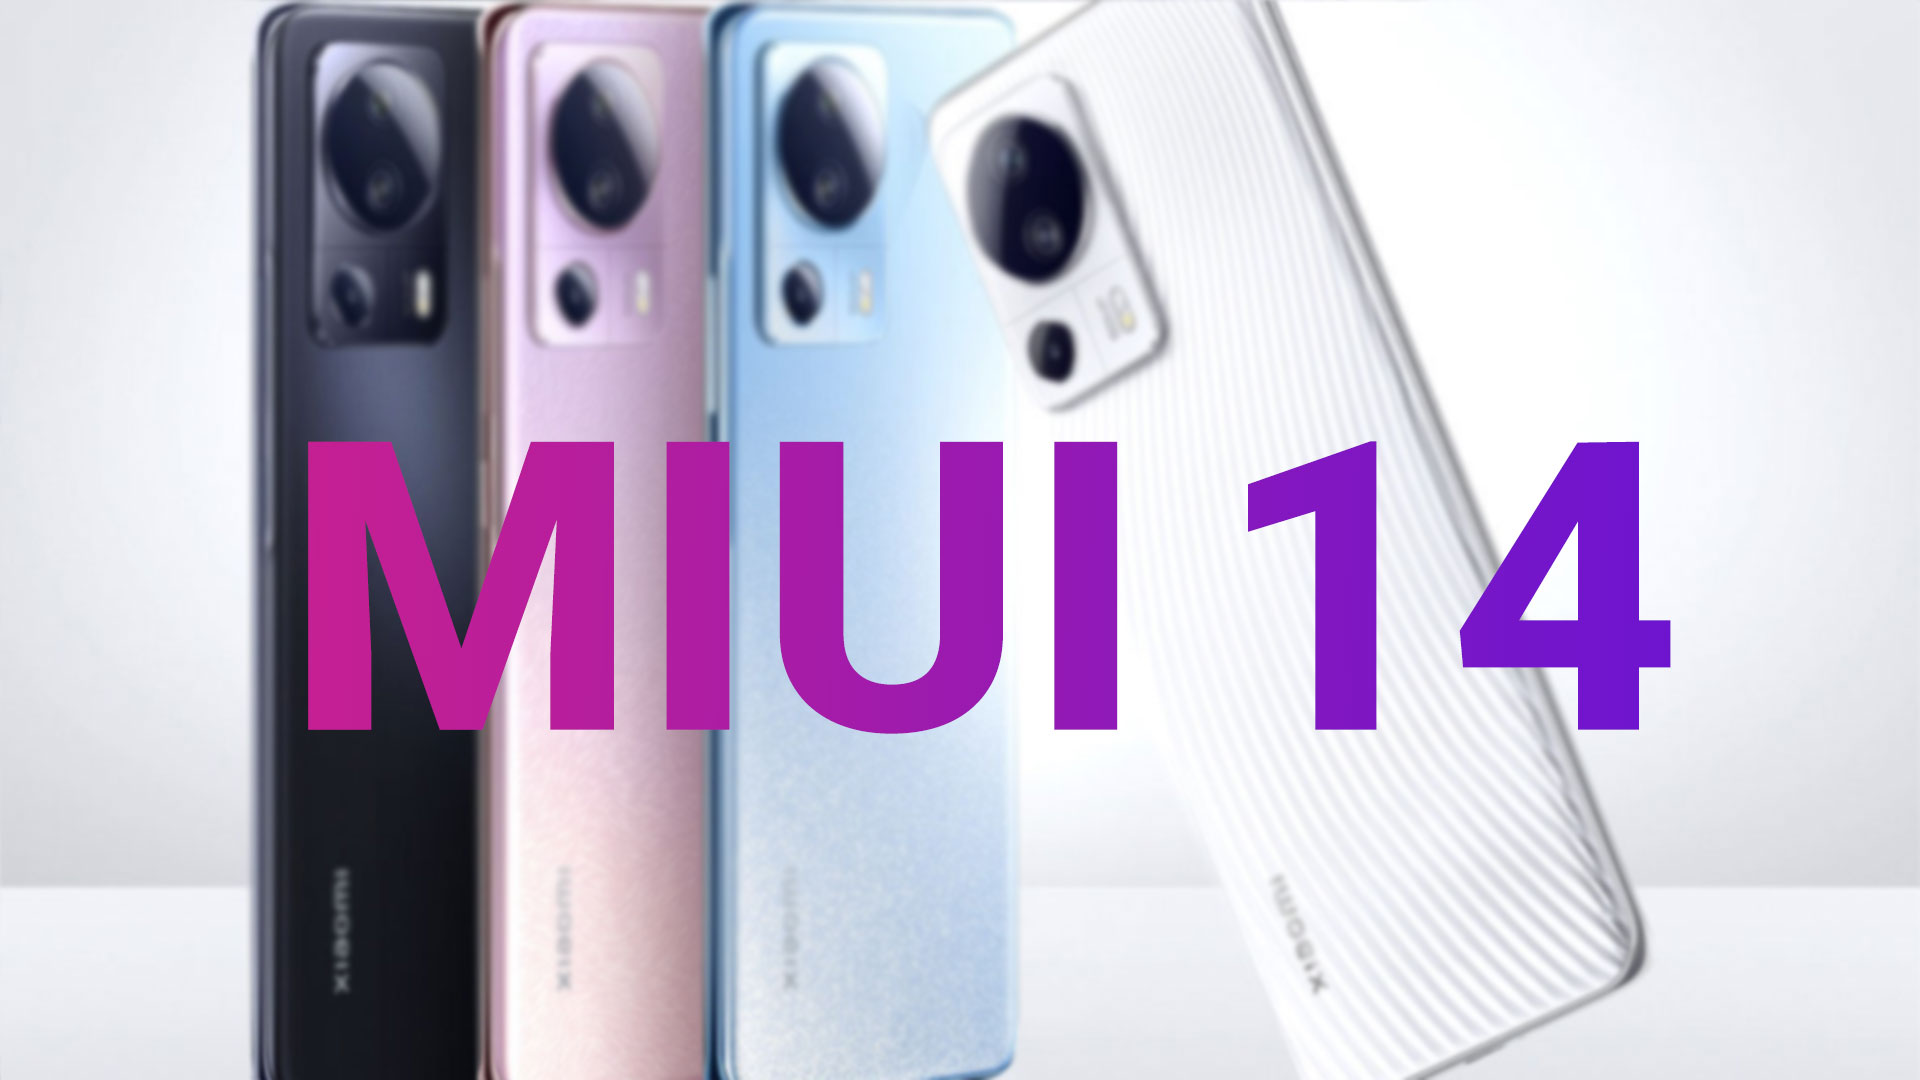 تغییرات جدید MIUI 14 قبل از عرضه